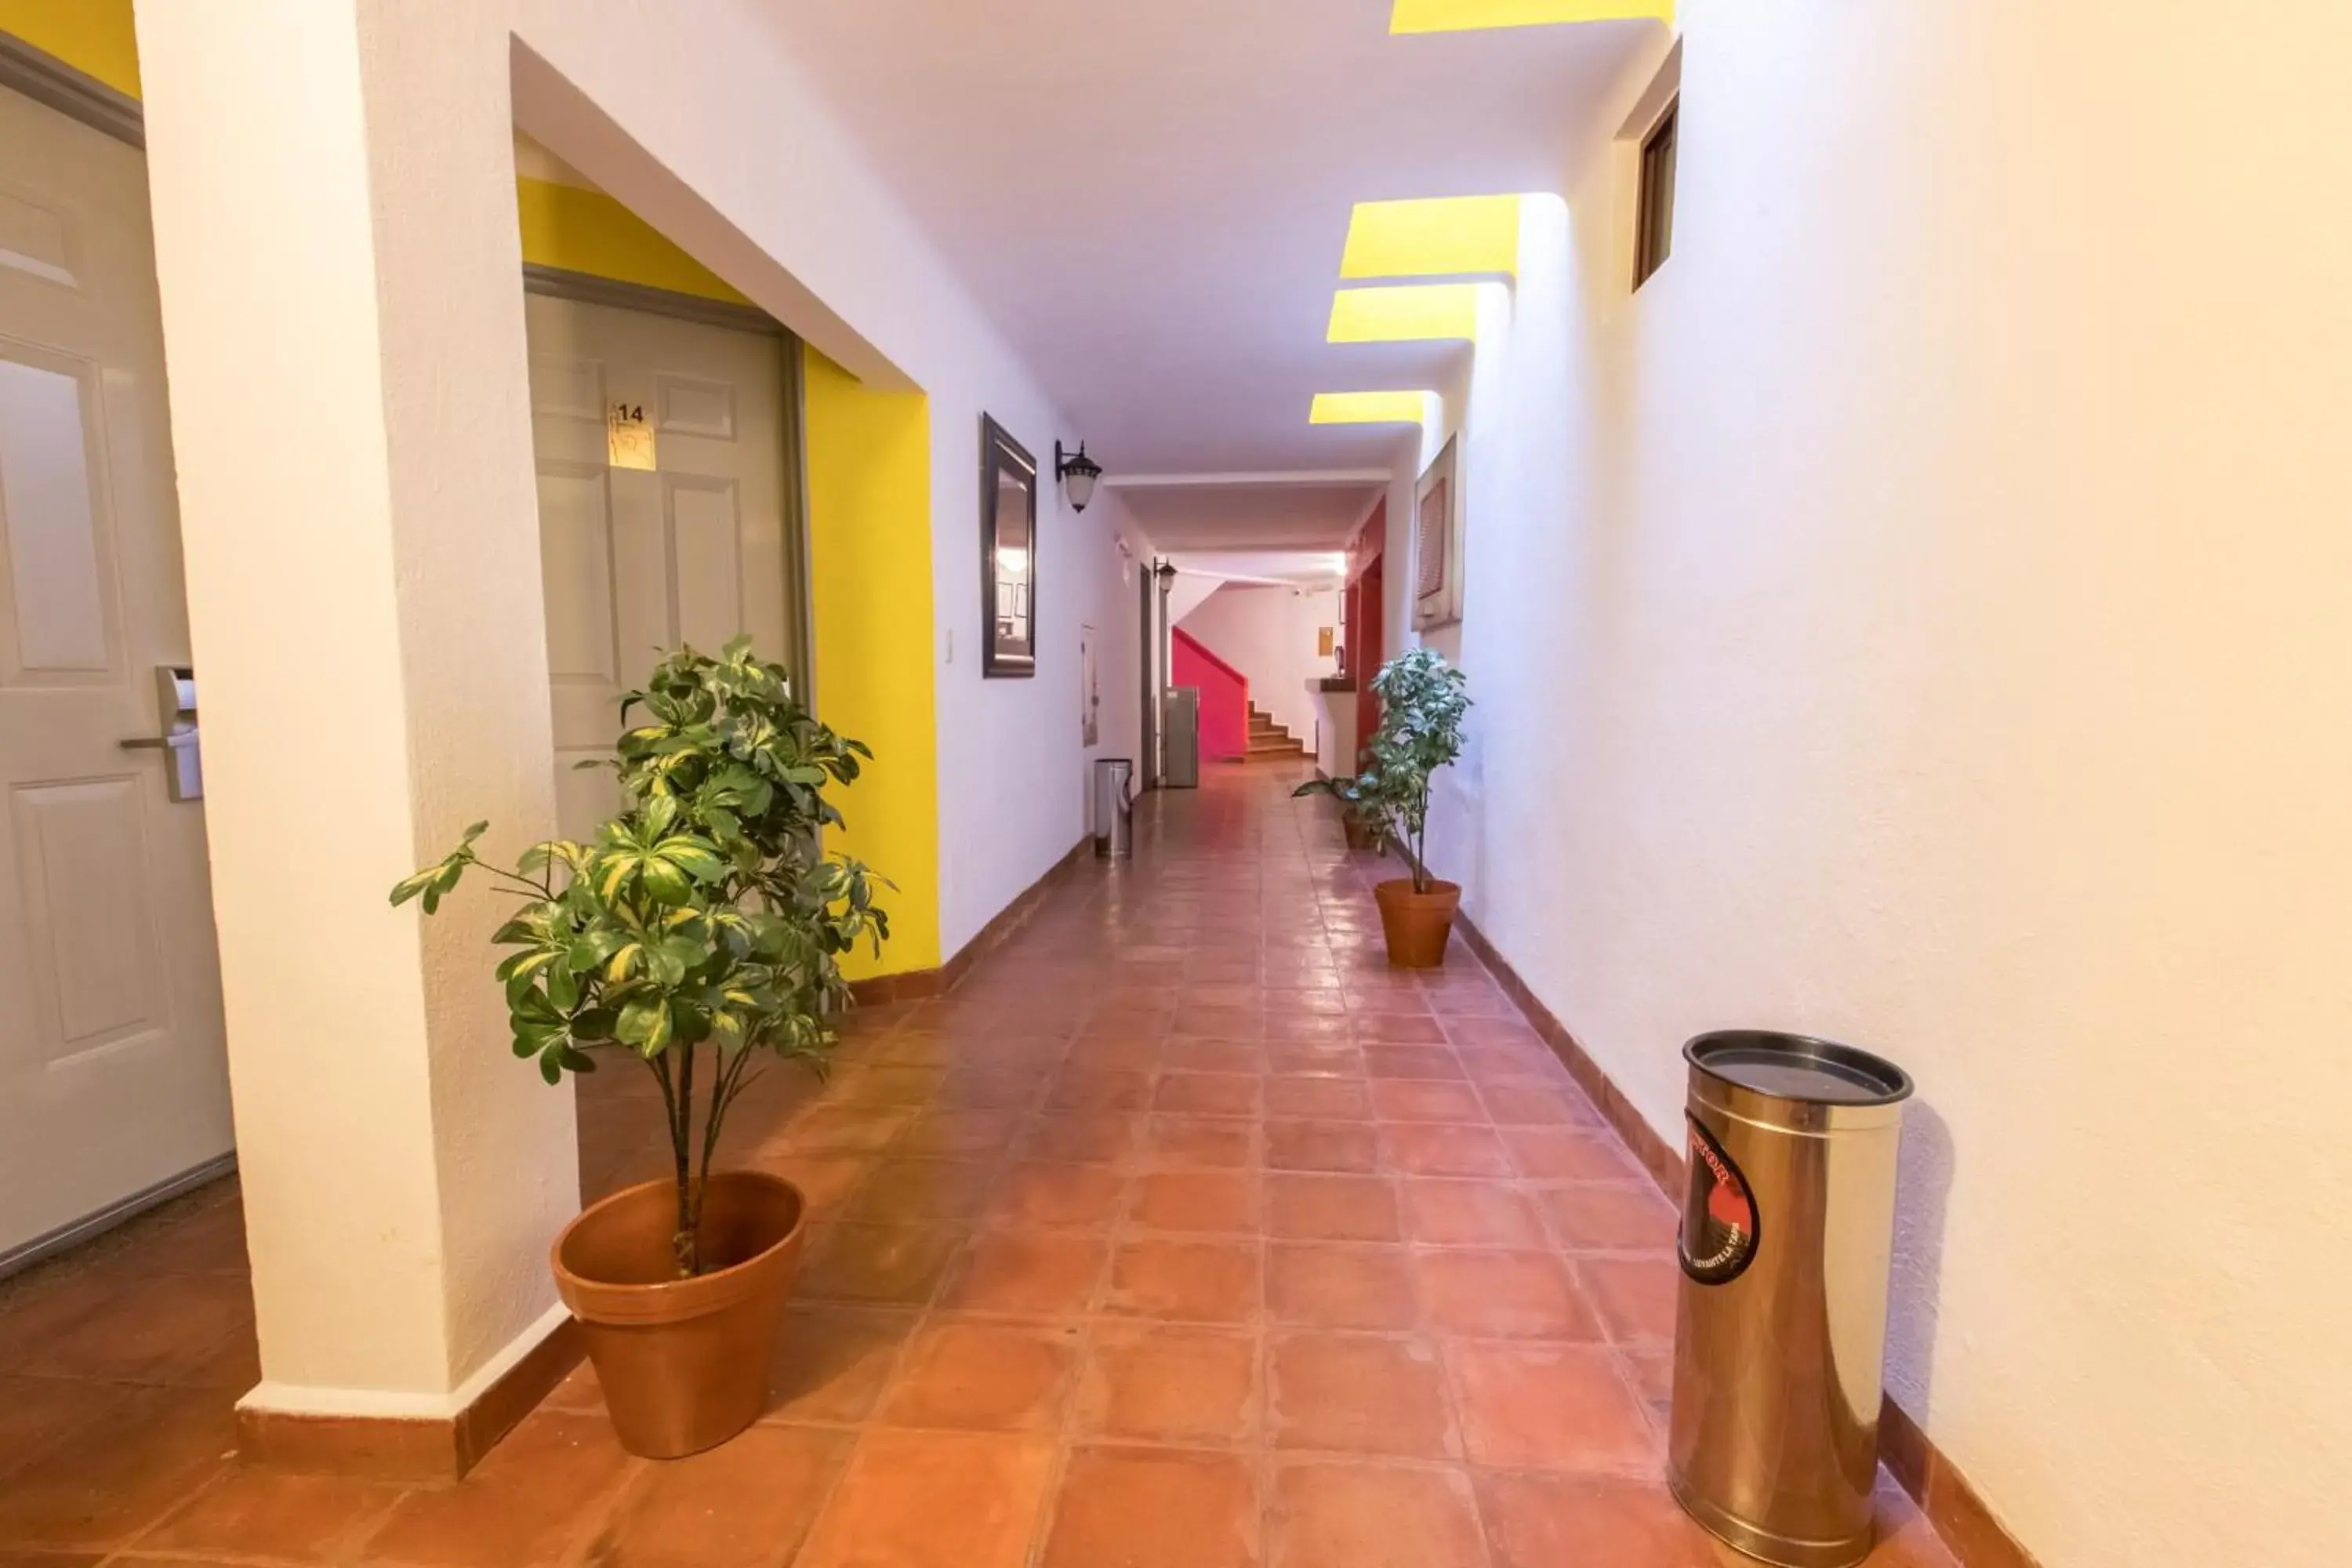 Area and facilities in Hotel Real de Leyendas